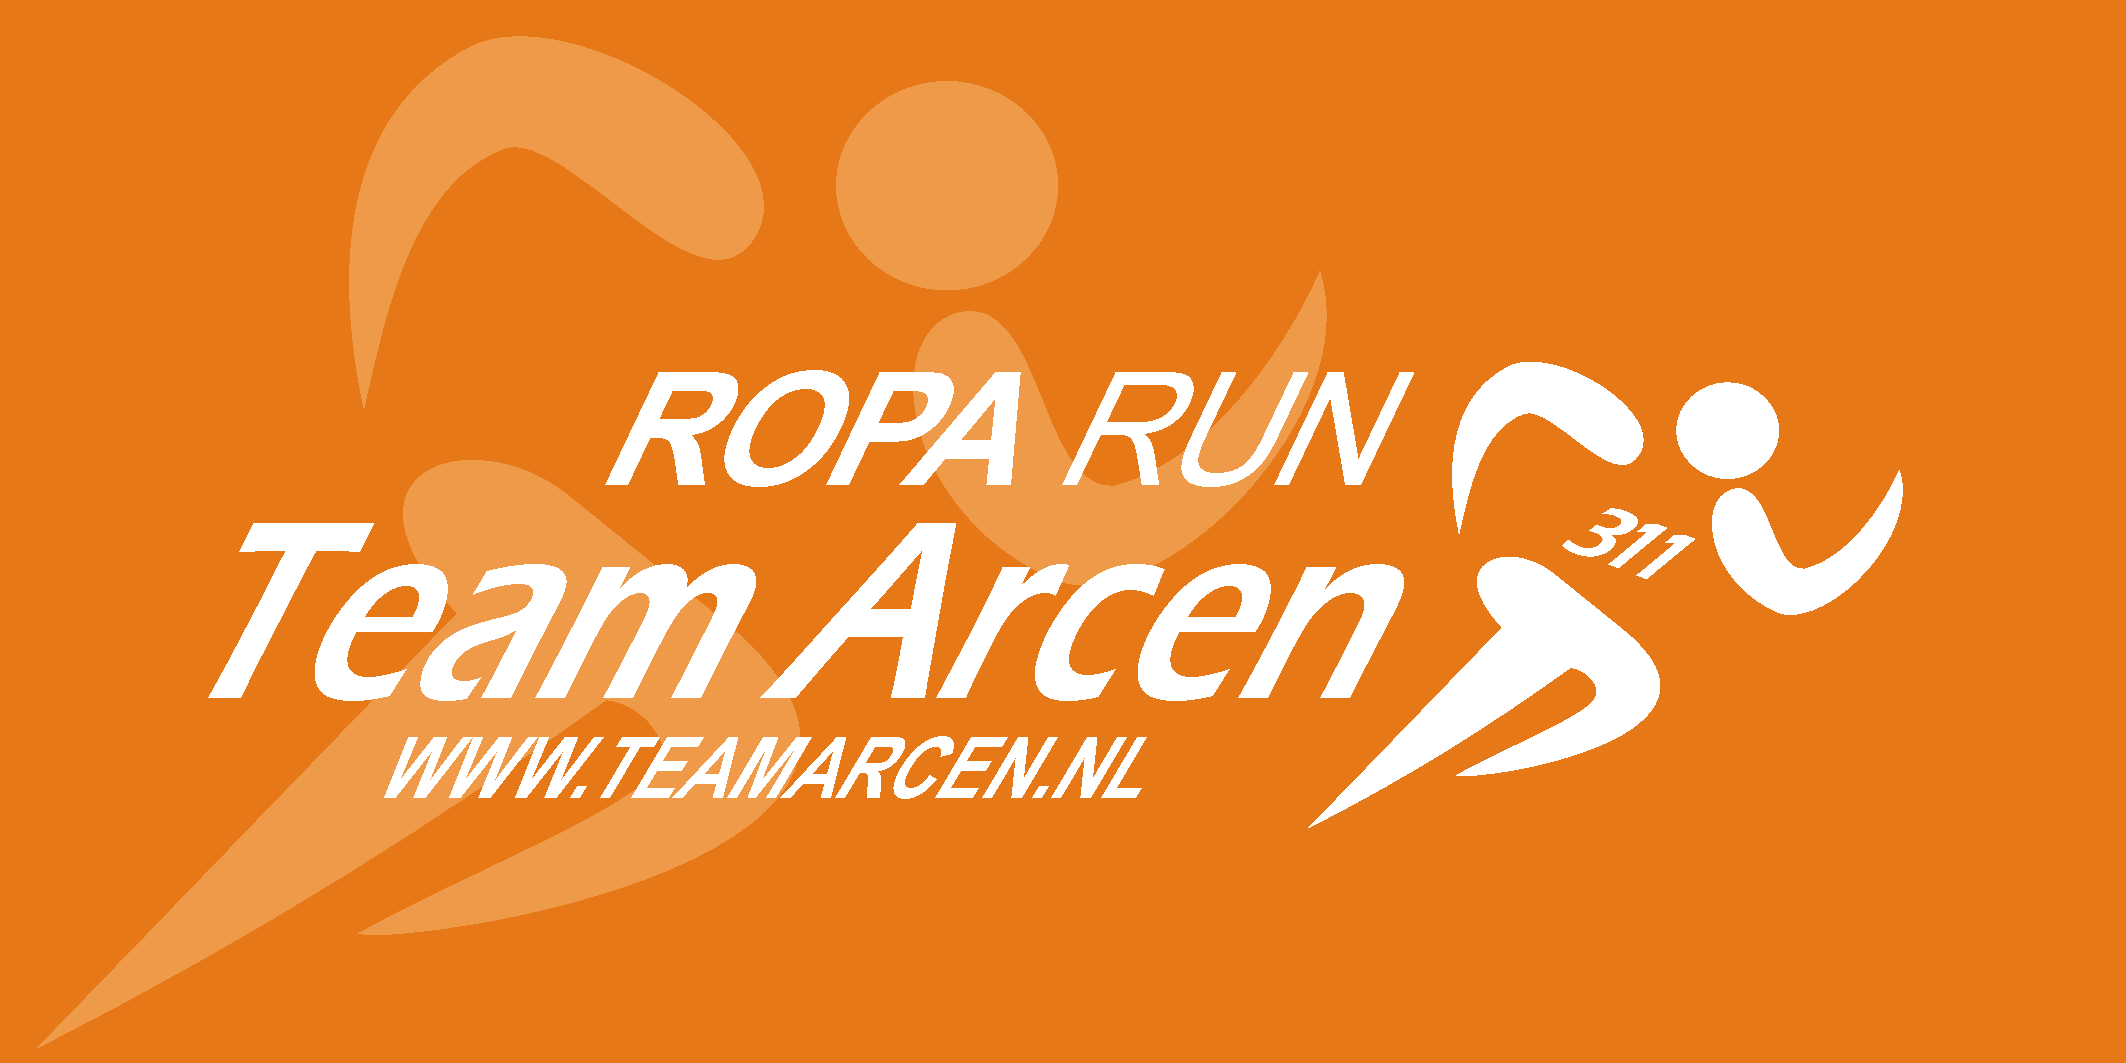 Roparun Team Arcen